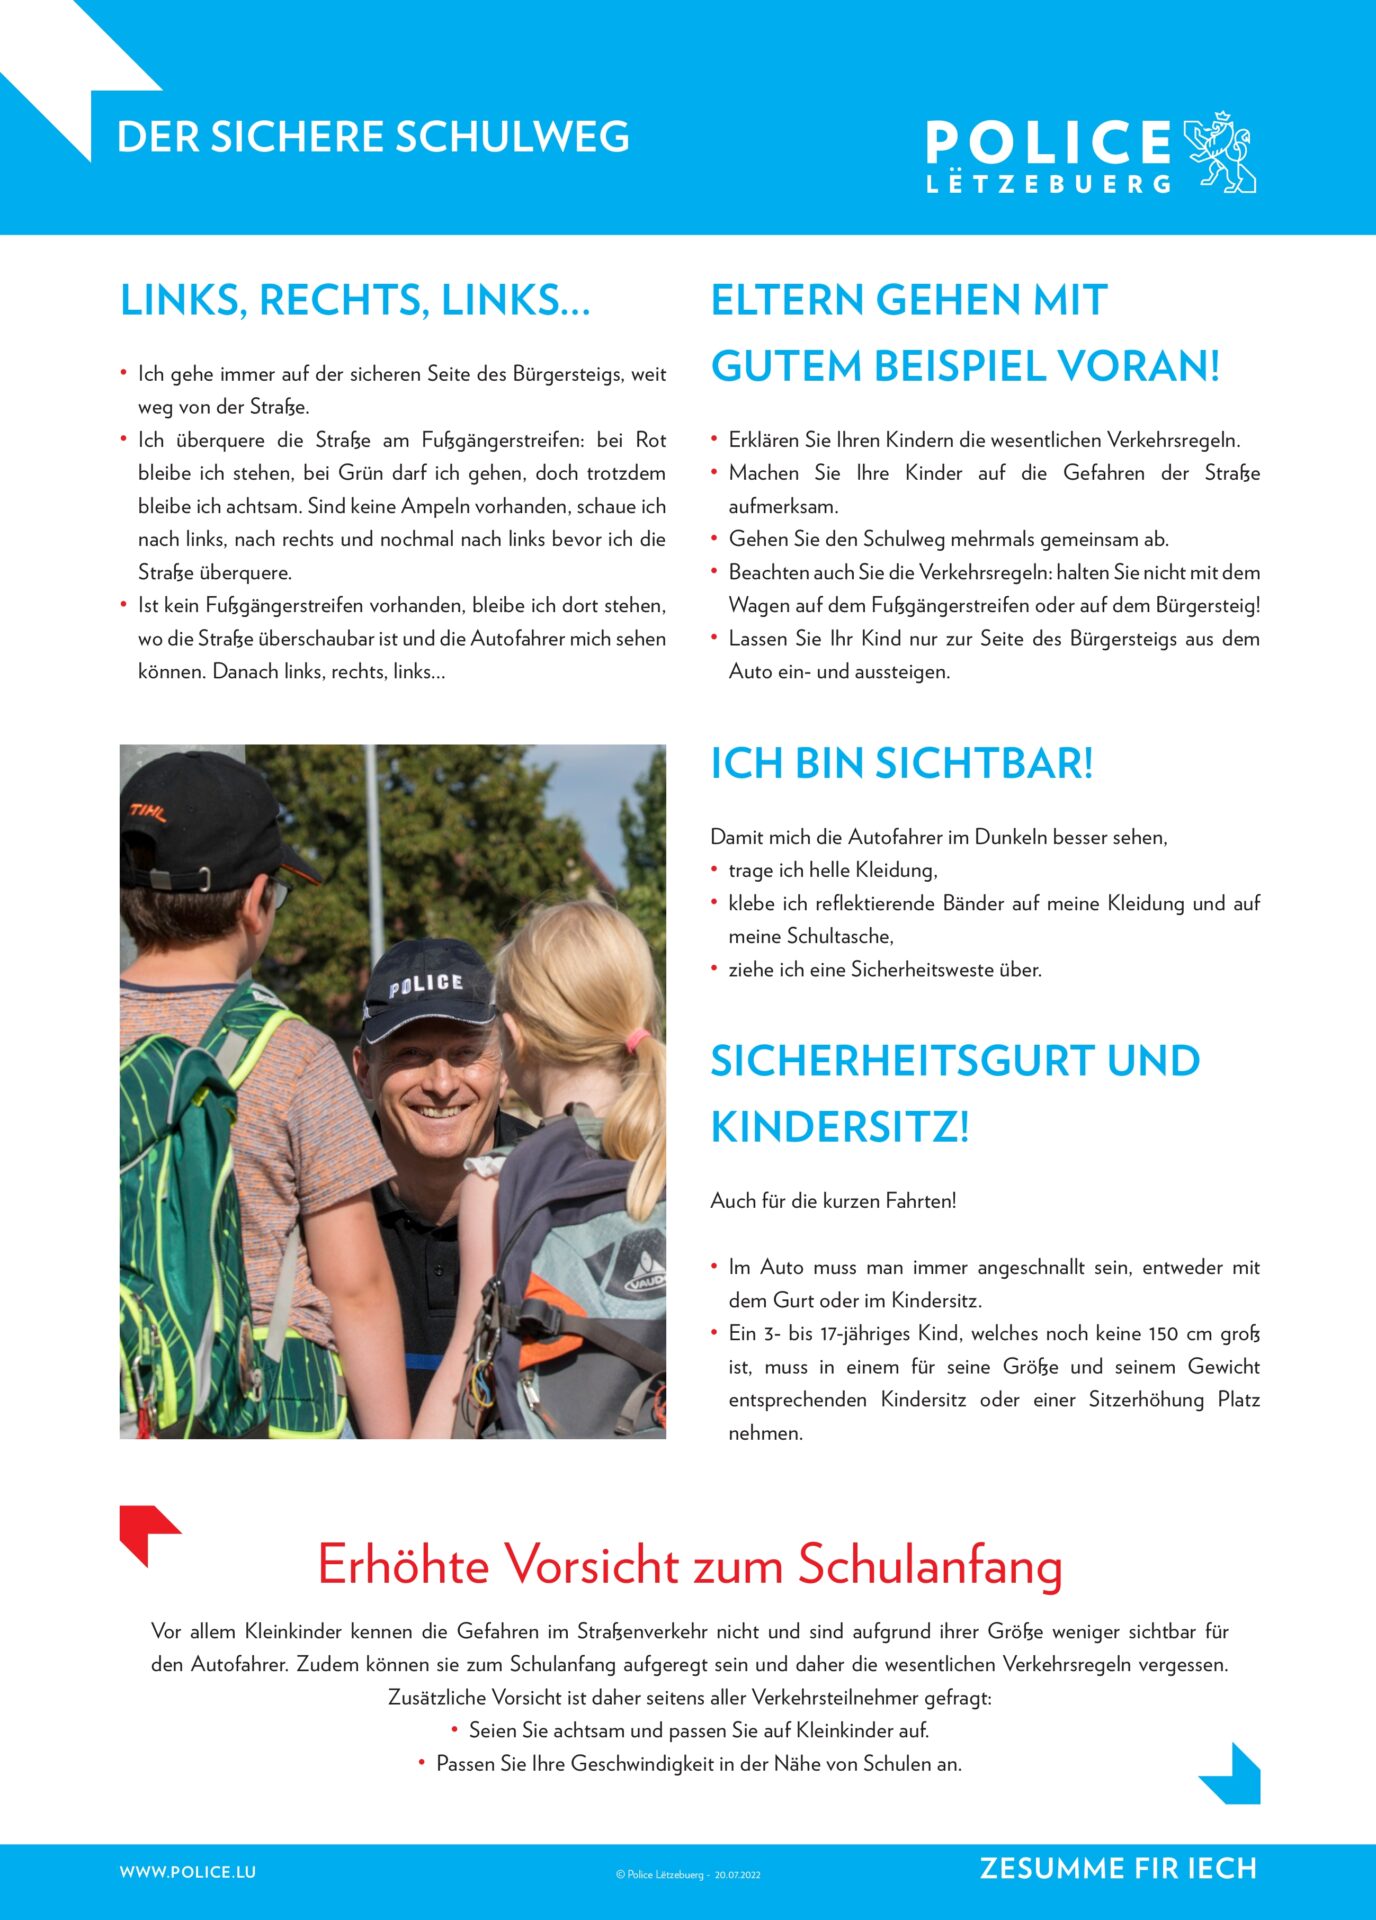 Der sichere Schulweg / Le Chemin de l'école en toute sécurité / A safer way to school